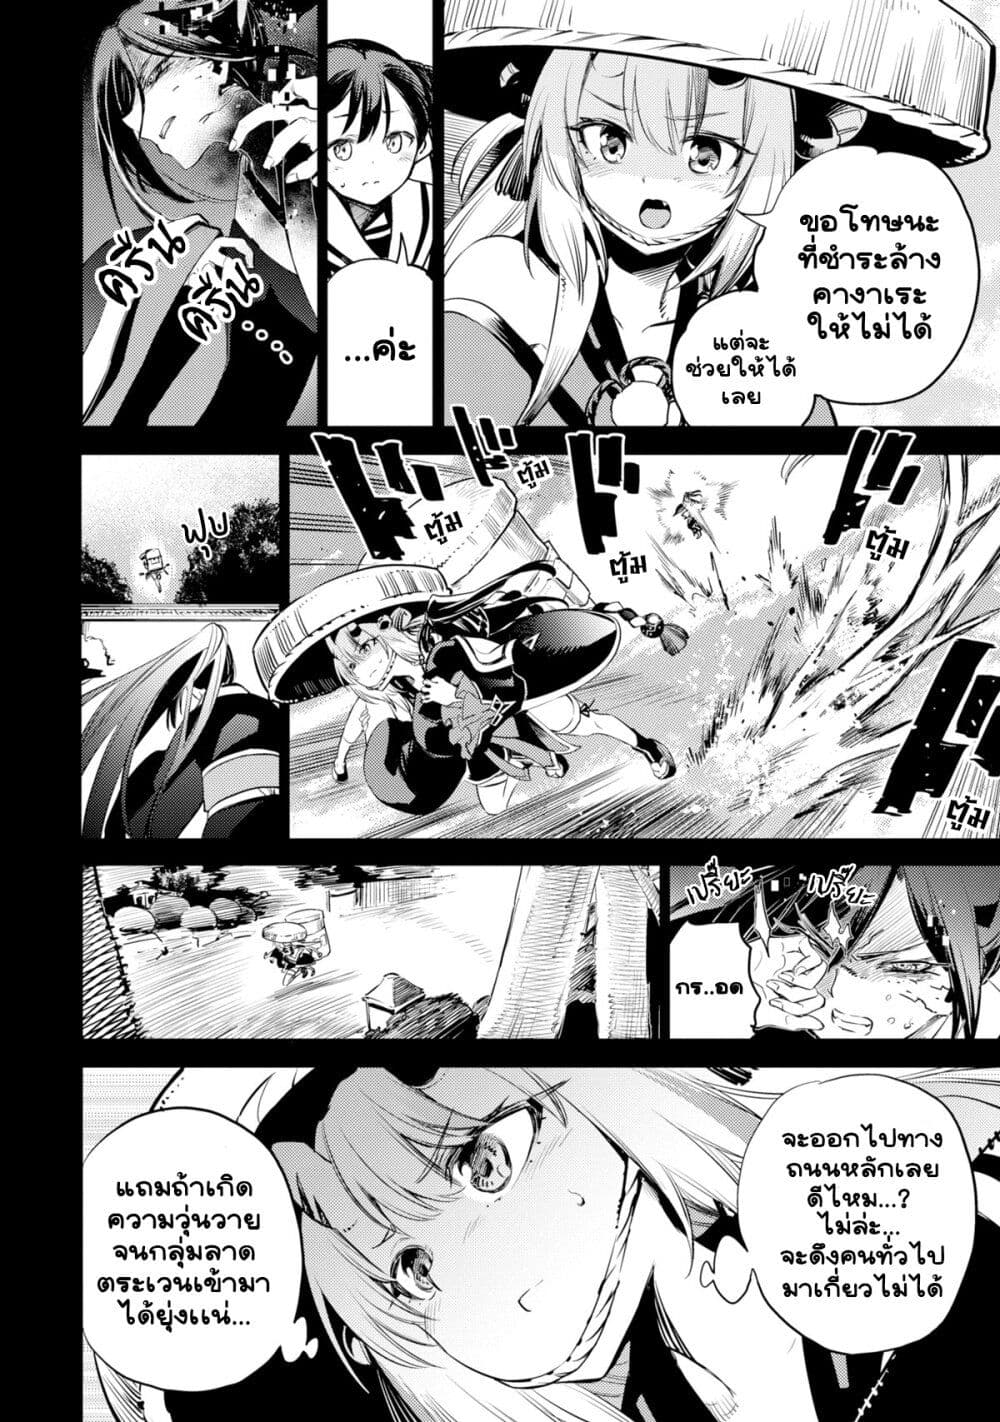 Holoearth Chronicles SideE ~Yamato Phantasia~ ตอนที่ 13 (6)